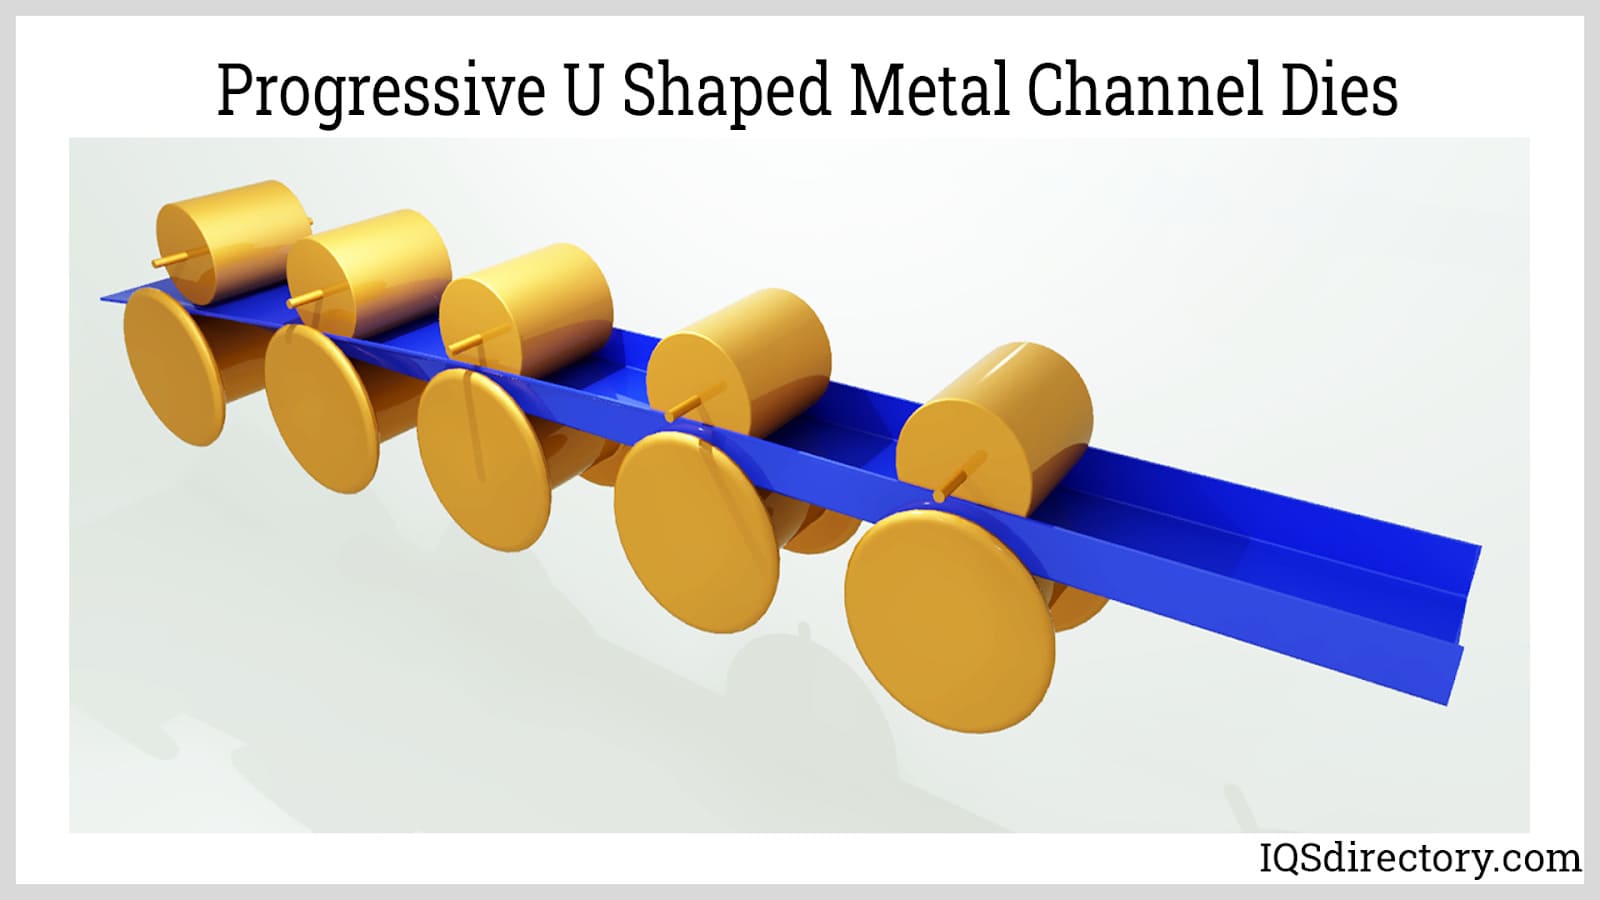 Progressive U Shaped Metal Channel Dies